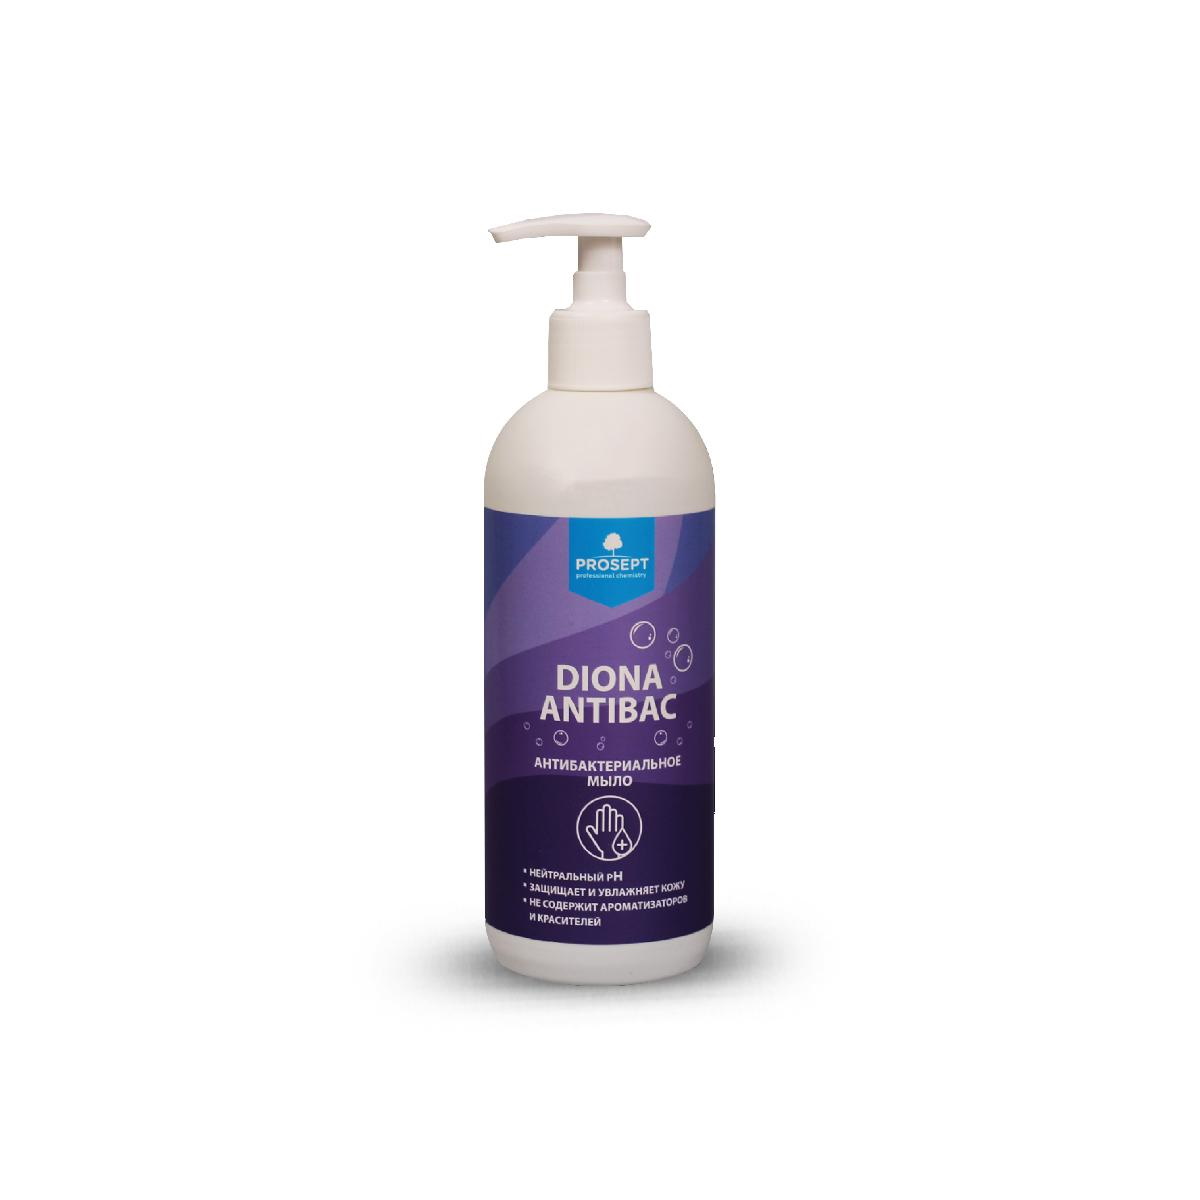 Антибактериальное жидкое мыло Diona Antibac 500 мл synergetic жидкое мыло лемонграсс и мята антибактериальное с эффектом нейтрализации запаха 1000 0